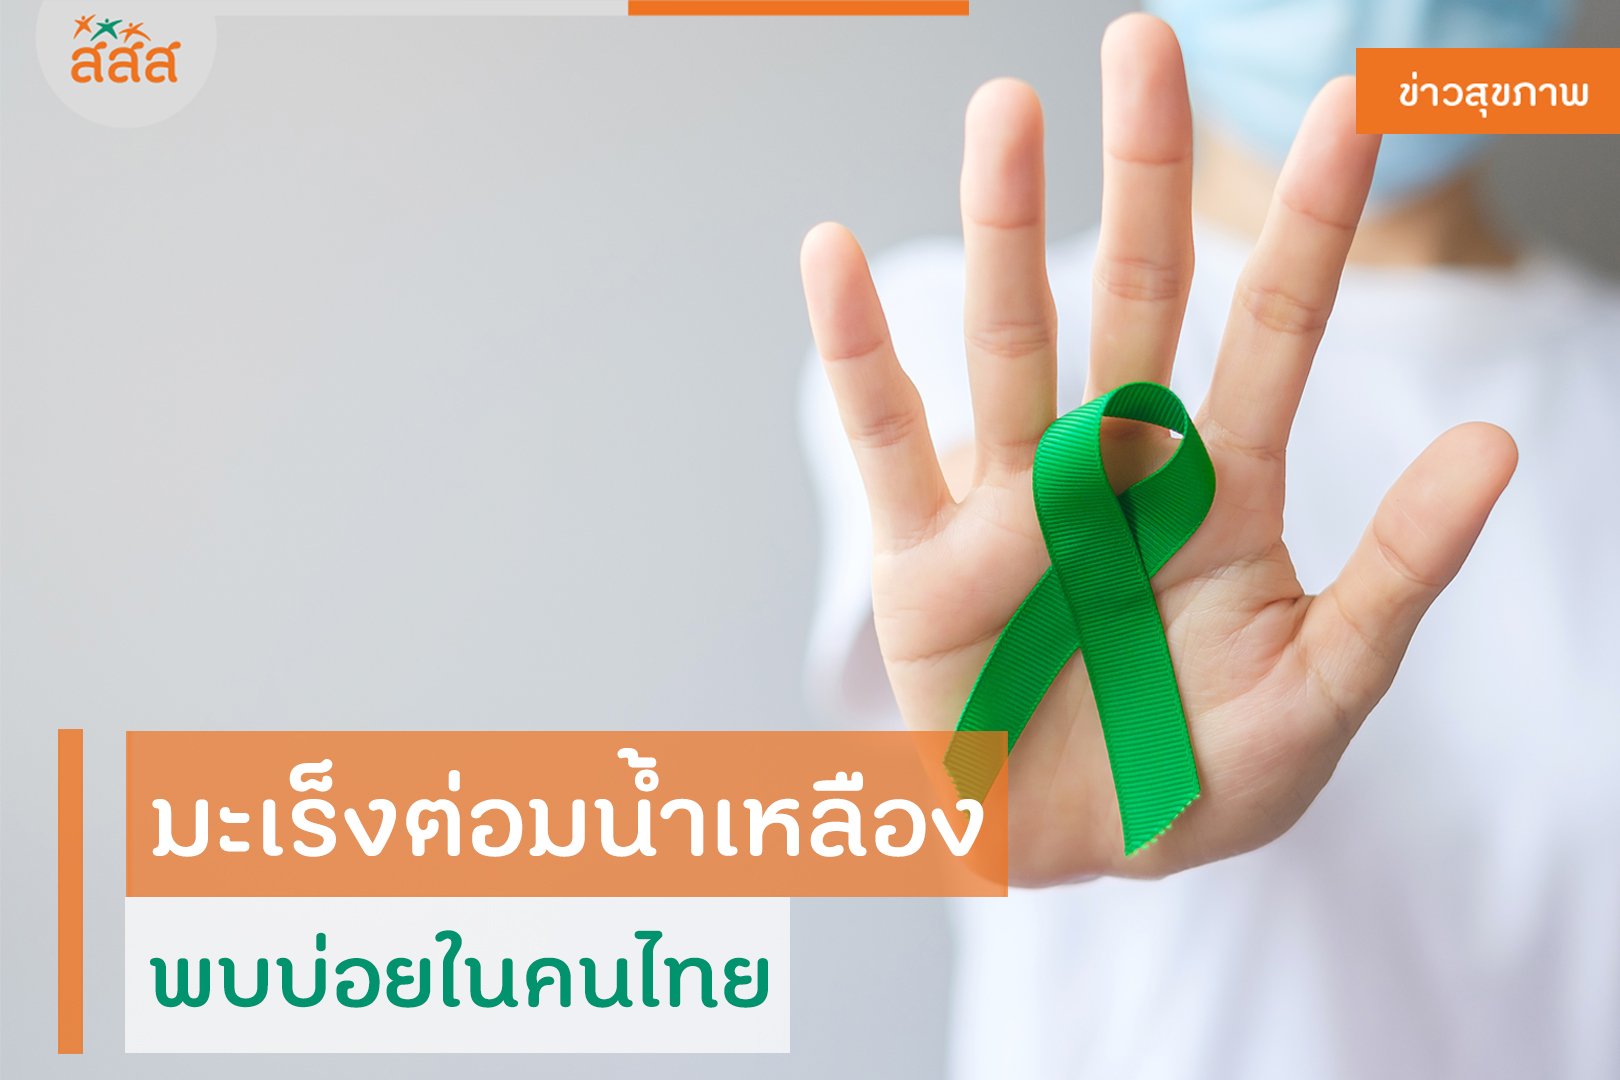 มะเร็งต่อมน้ำเหลือง พบมากในคนไทย thaihealth